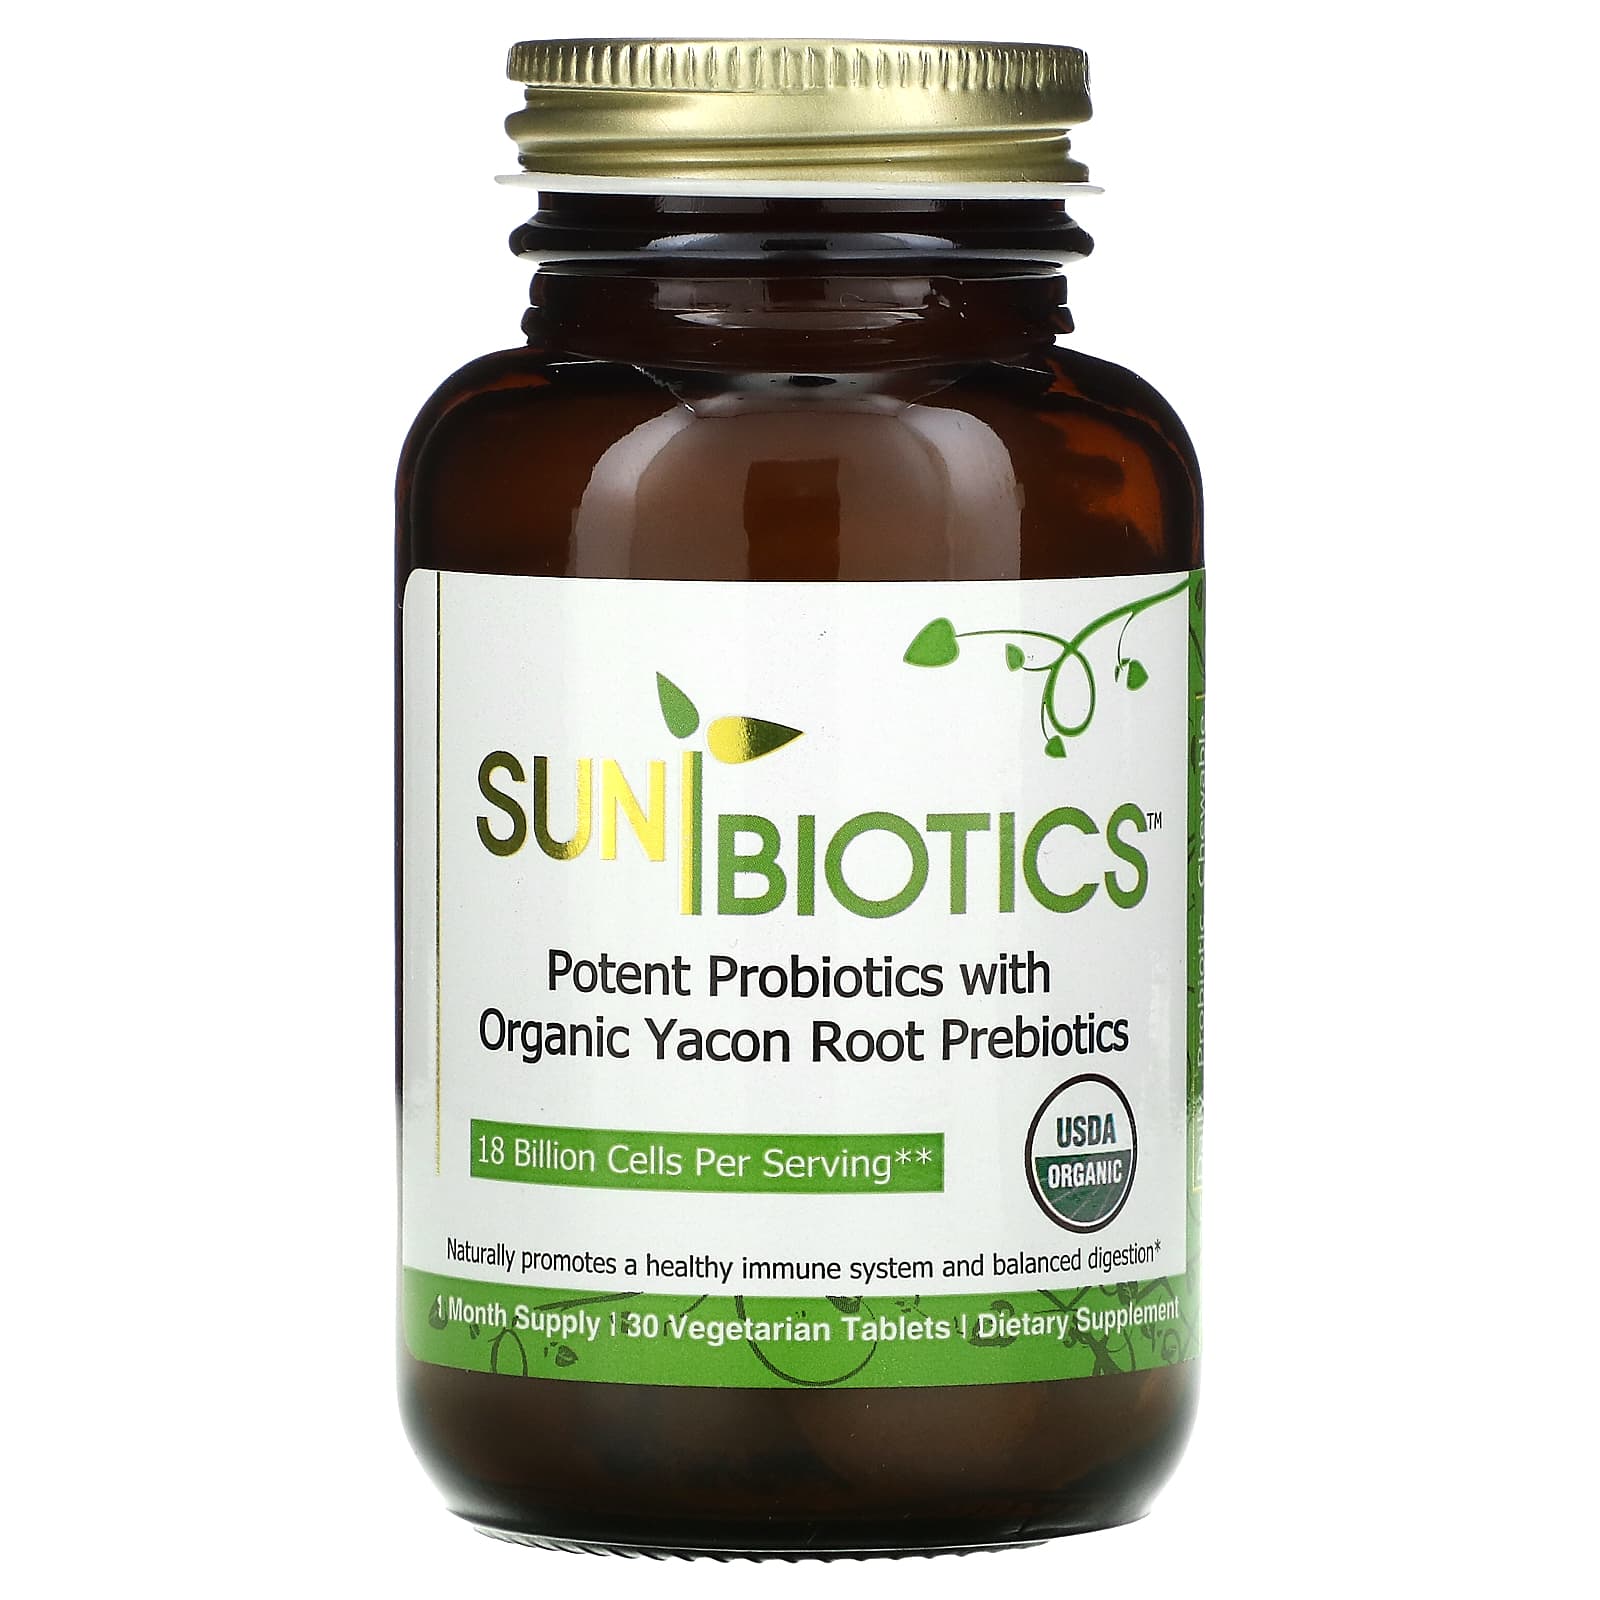 Пробиотики Sunbiotics с органическими пребиотиками корня якона, 30 вегетарианских таблеток фото